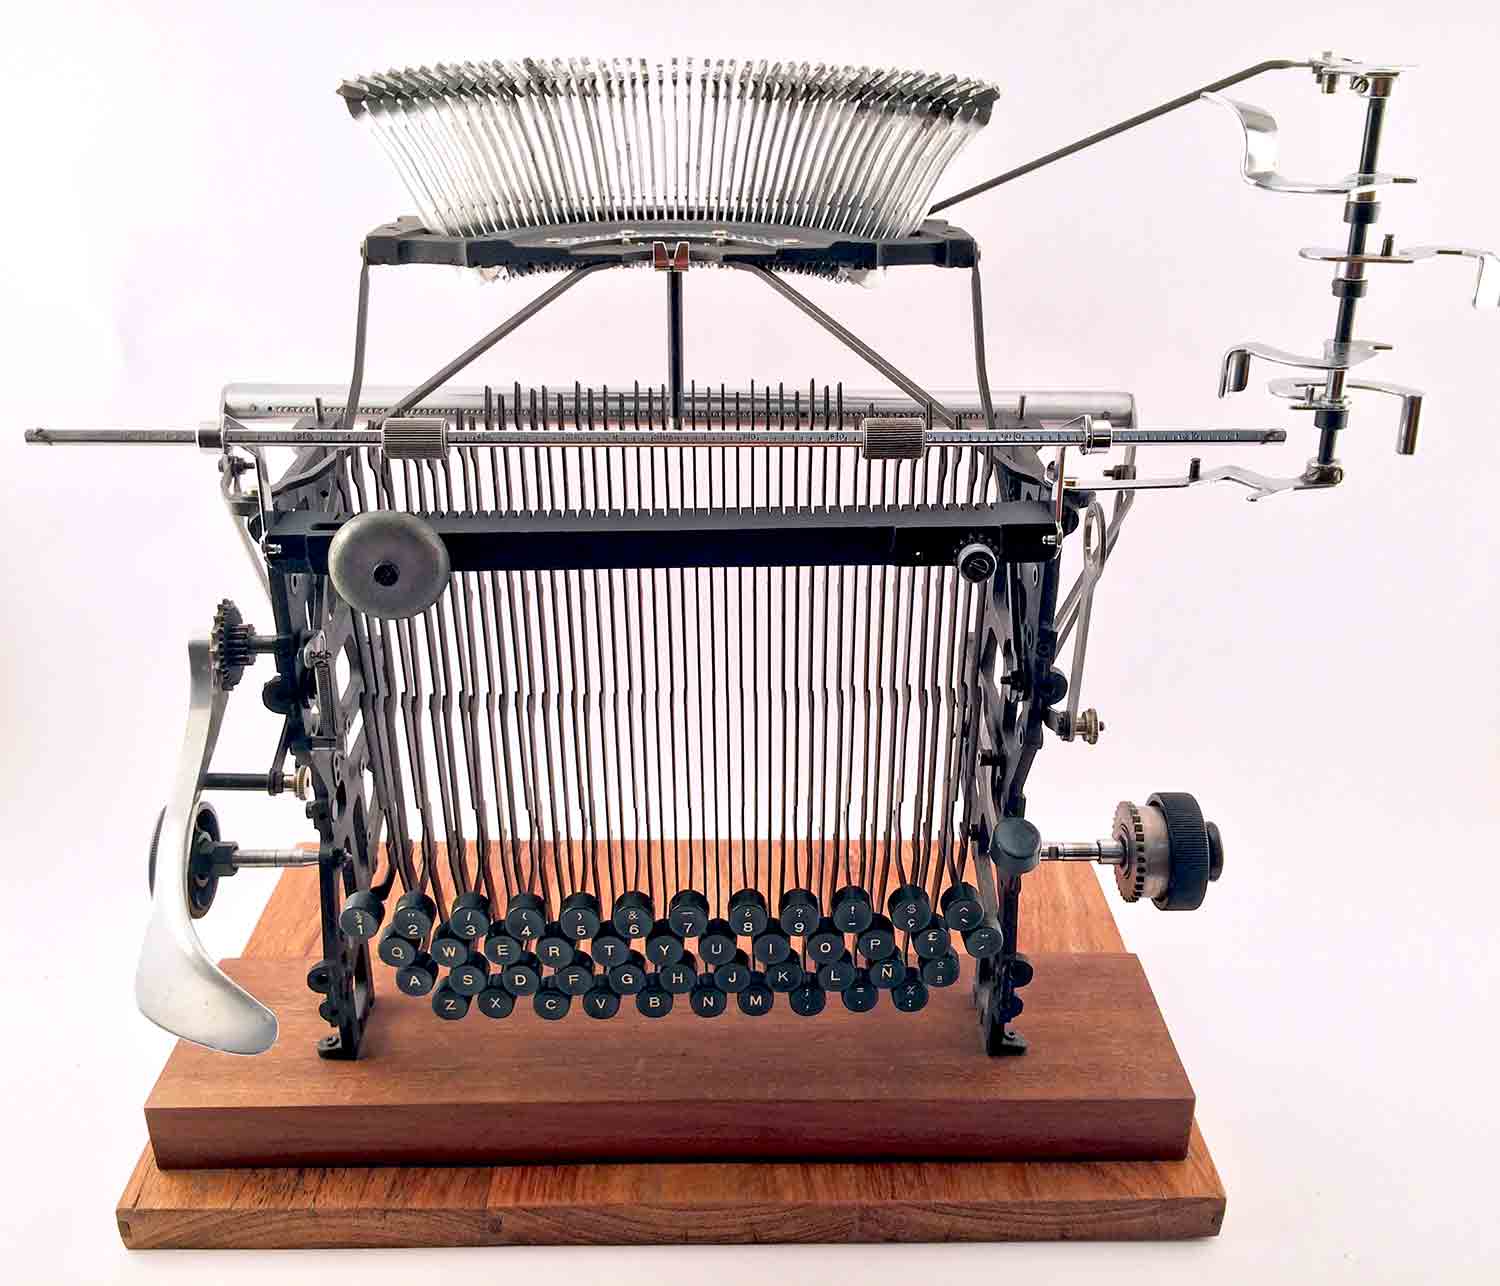 Escultura de una interpretación de una máquina de escribir Olivetti Lexicon 80